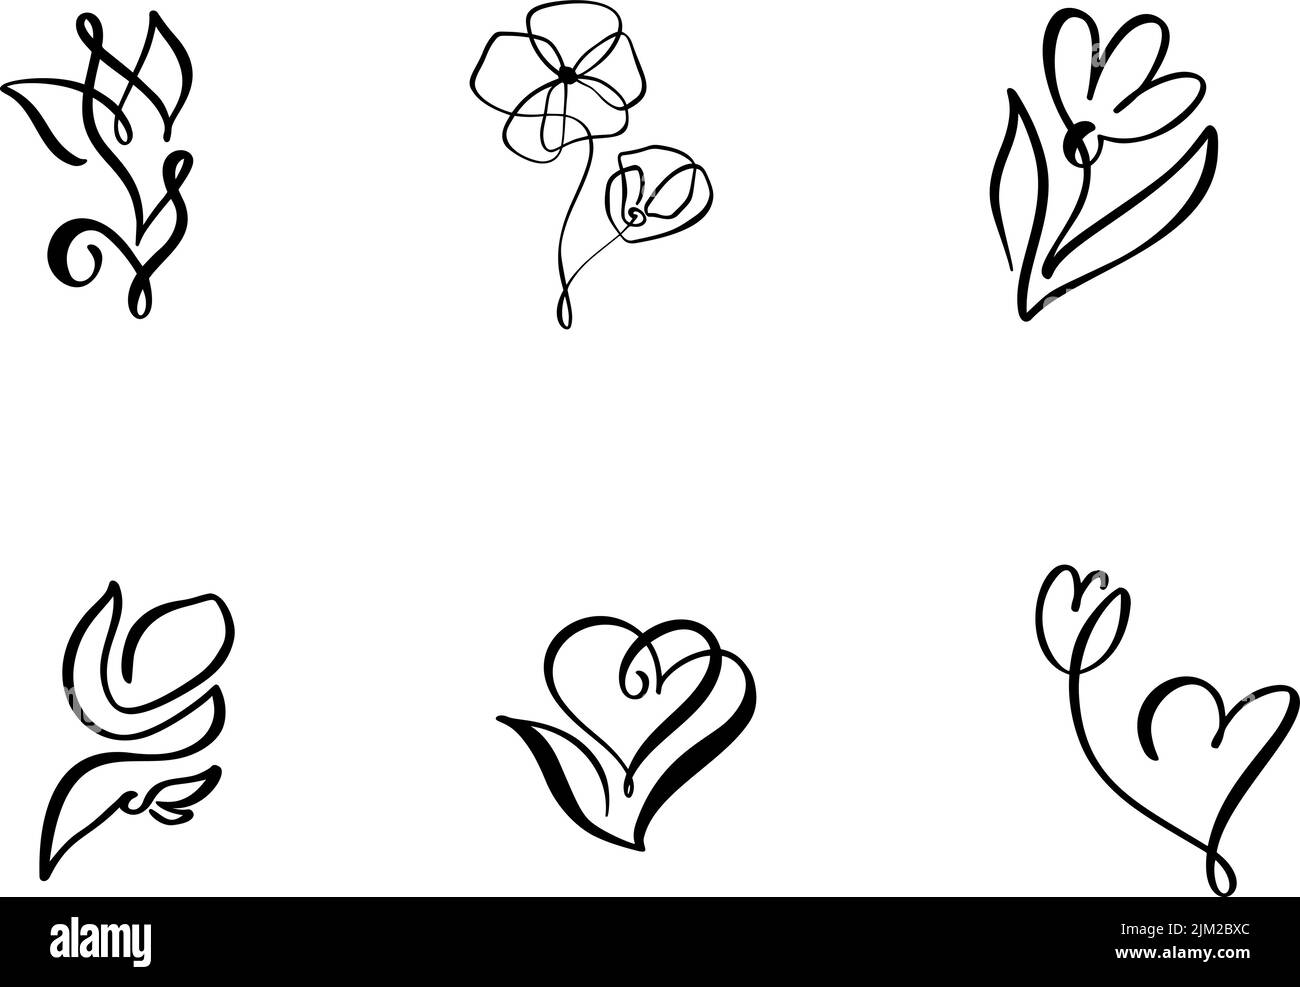 Conjunto de dibujo continuo de líneas de dibujo Vector Calligraphic Flor logotipo. Croquis negro de plantas aisladas sobre fondo blanco. Ilustración de una línea Ilustración del Vector